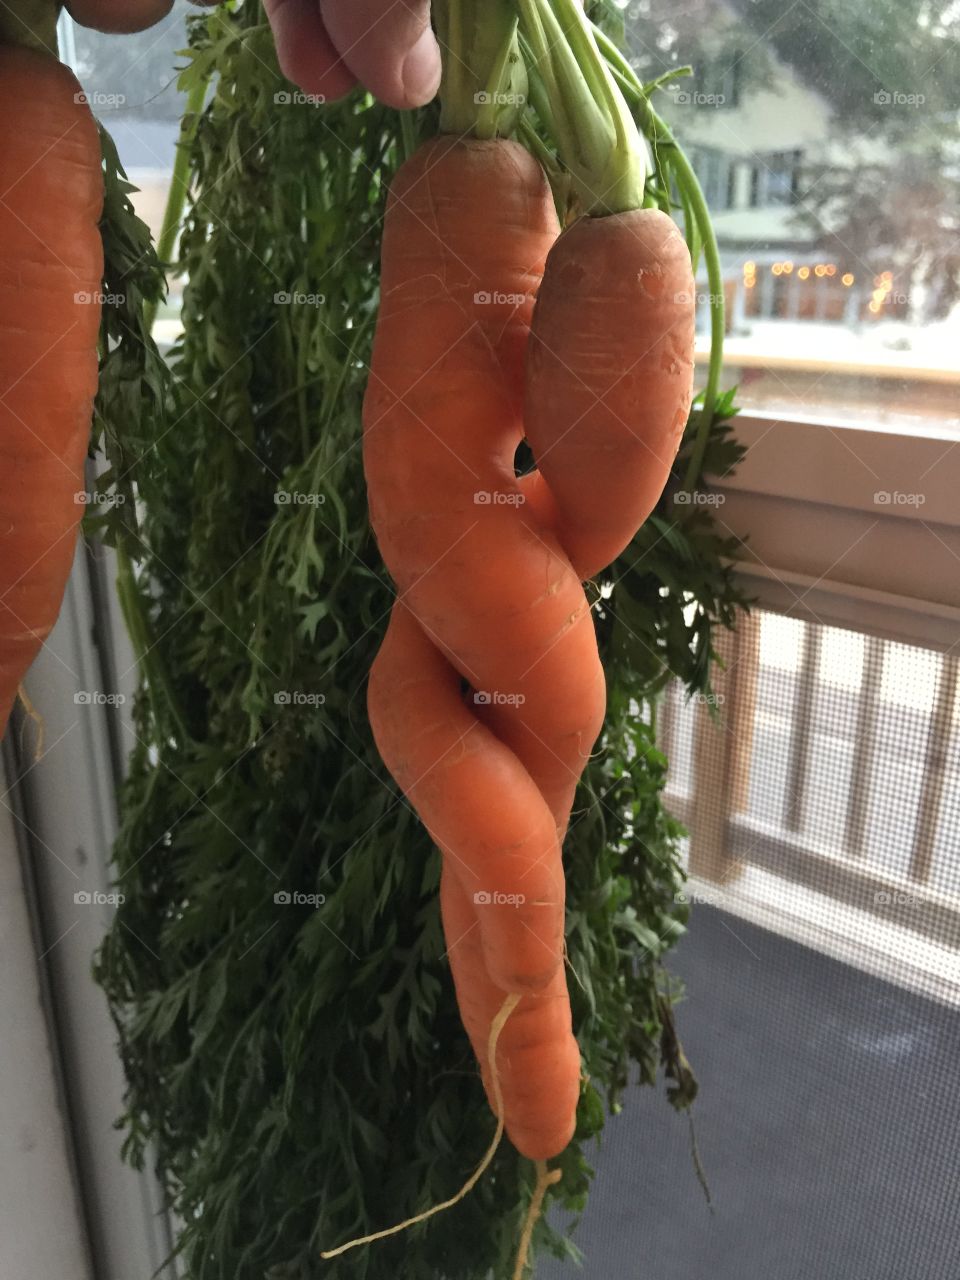 Strange vegetable 